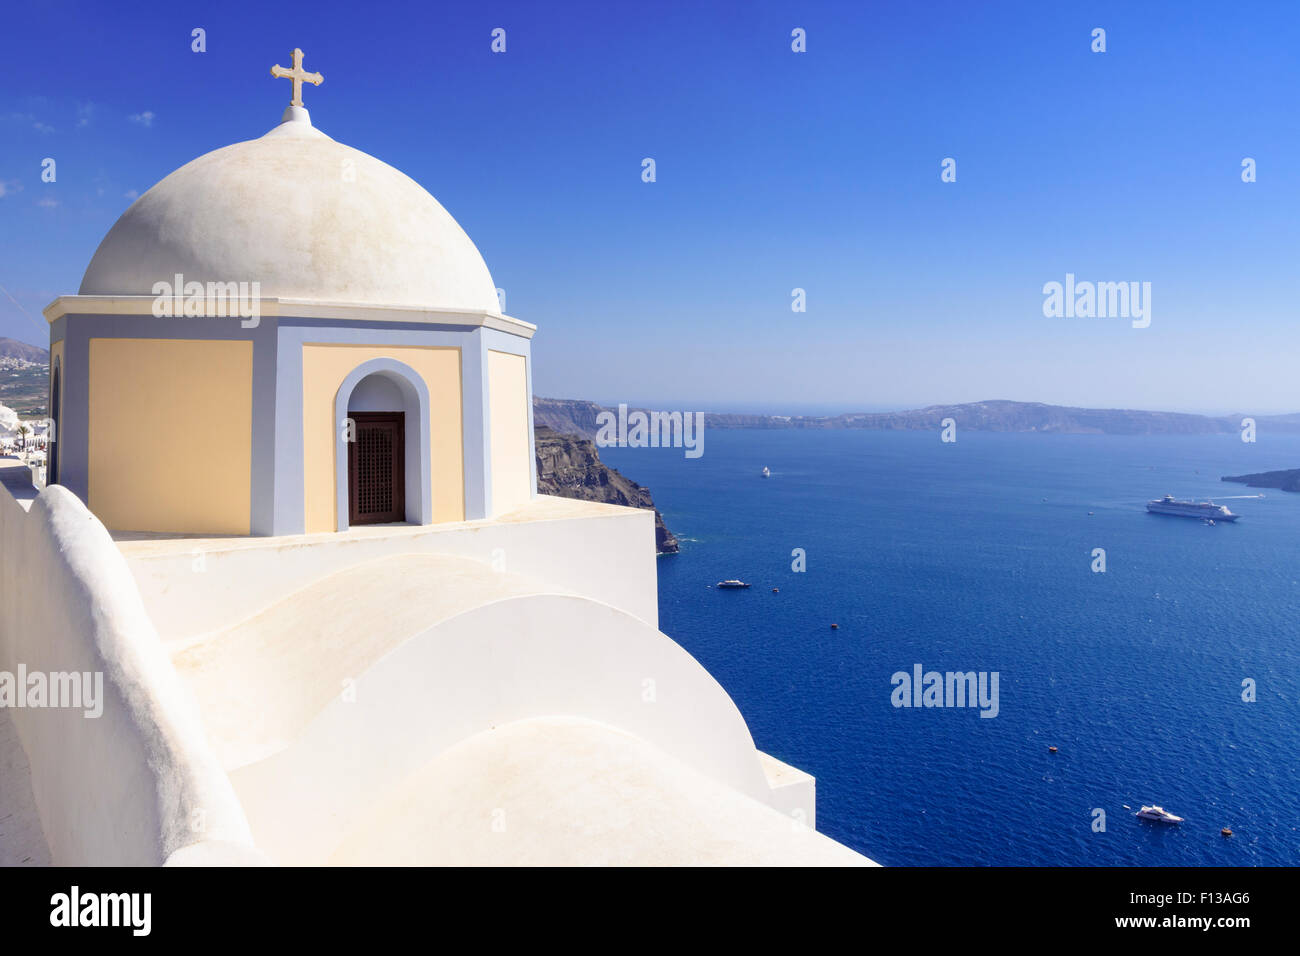 Détail de l'église à coupole surplombant la caldera, Firostefani, Santorini, Cyclades, Grèce Banque D'Images